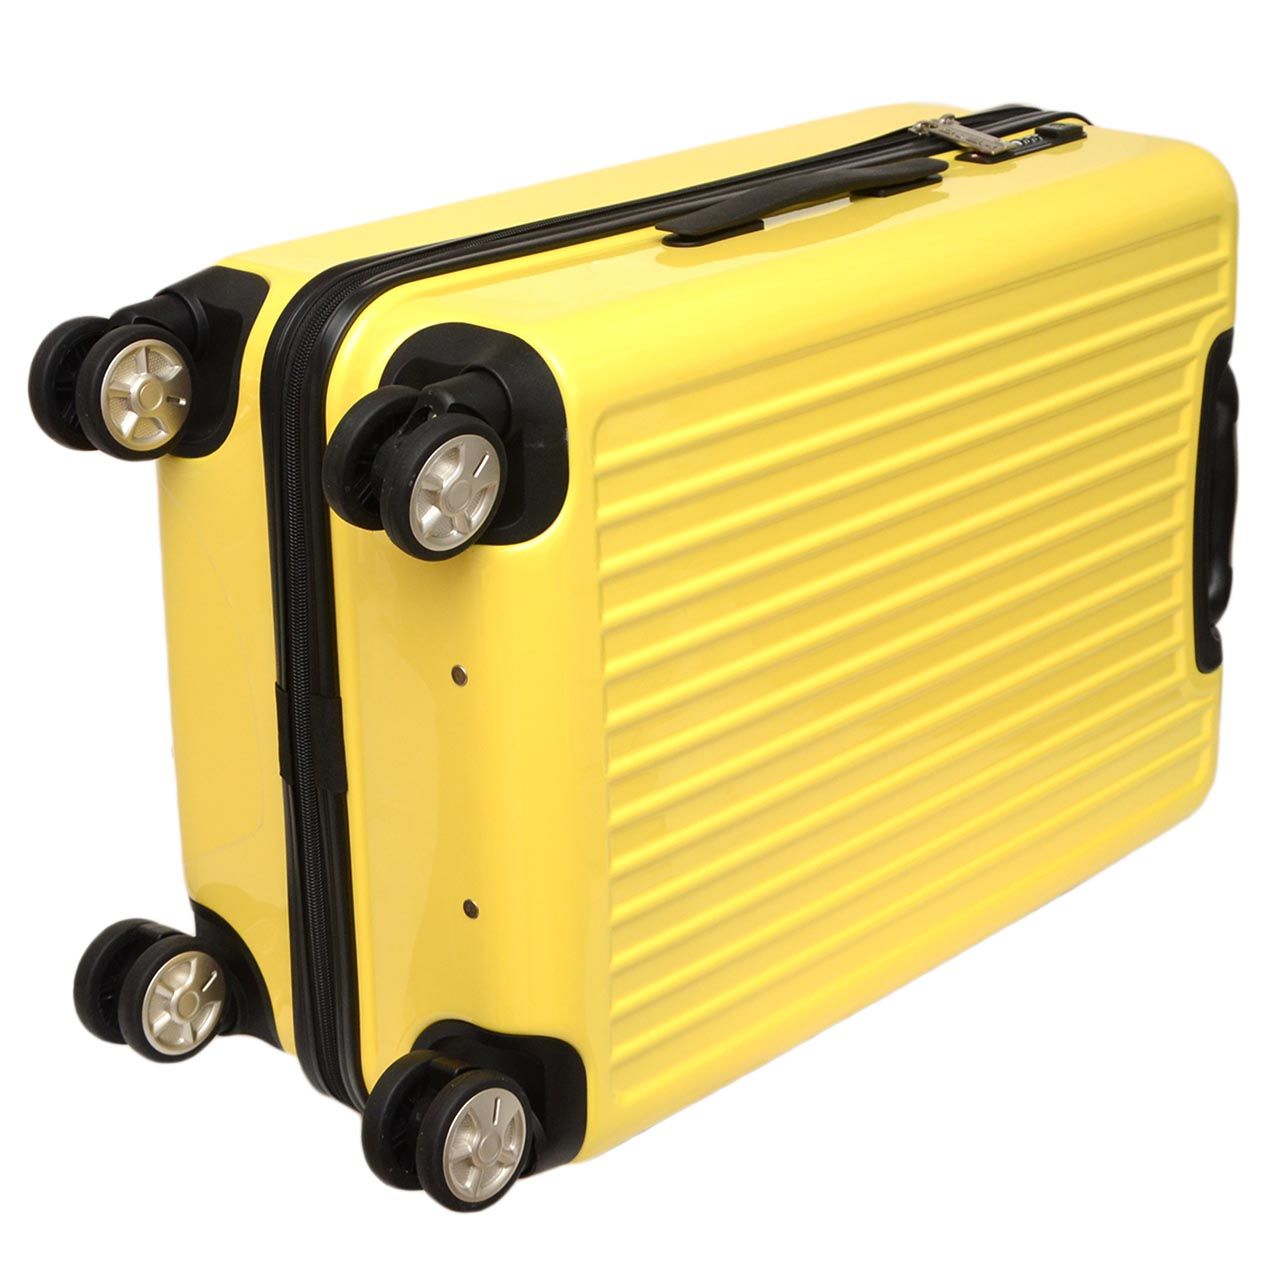 چمدان هد مدل HL 003 سایز متوسط -  - 8